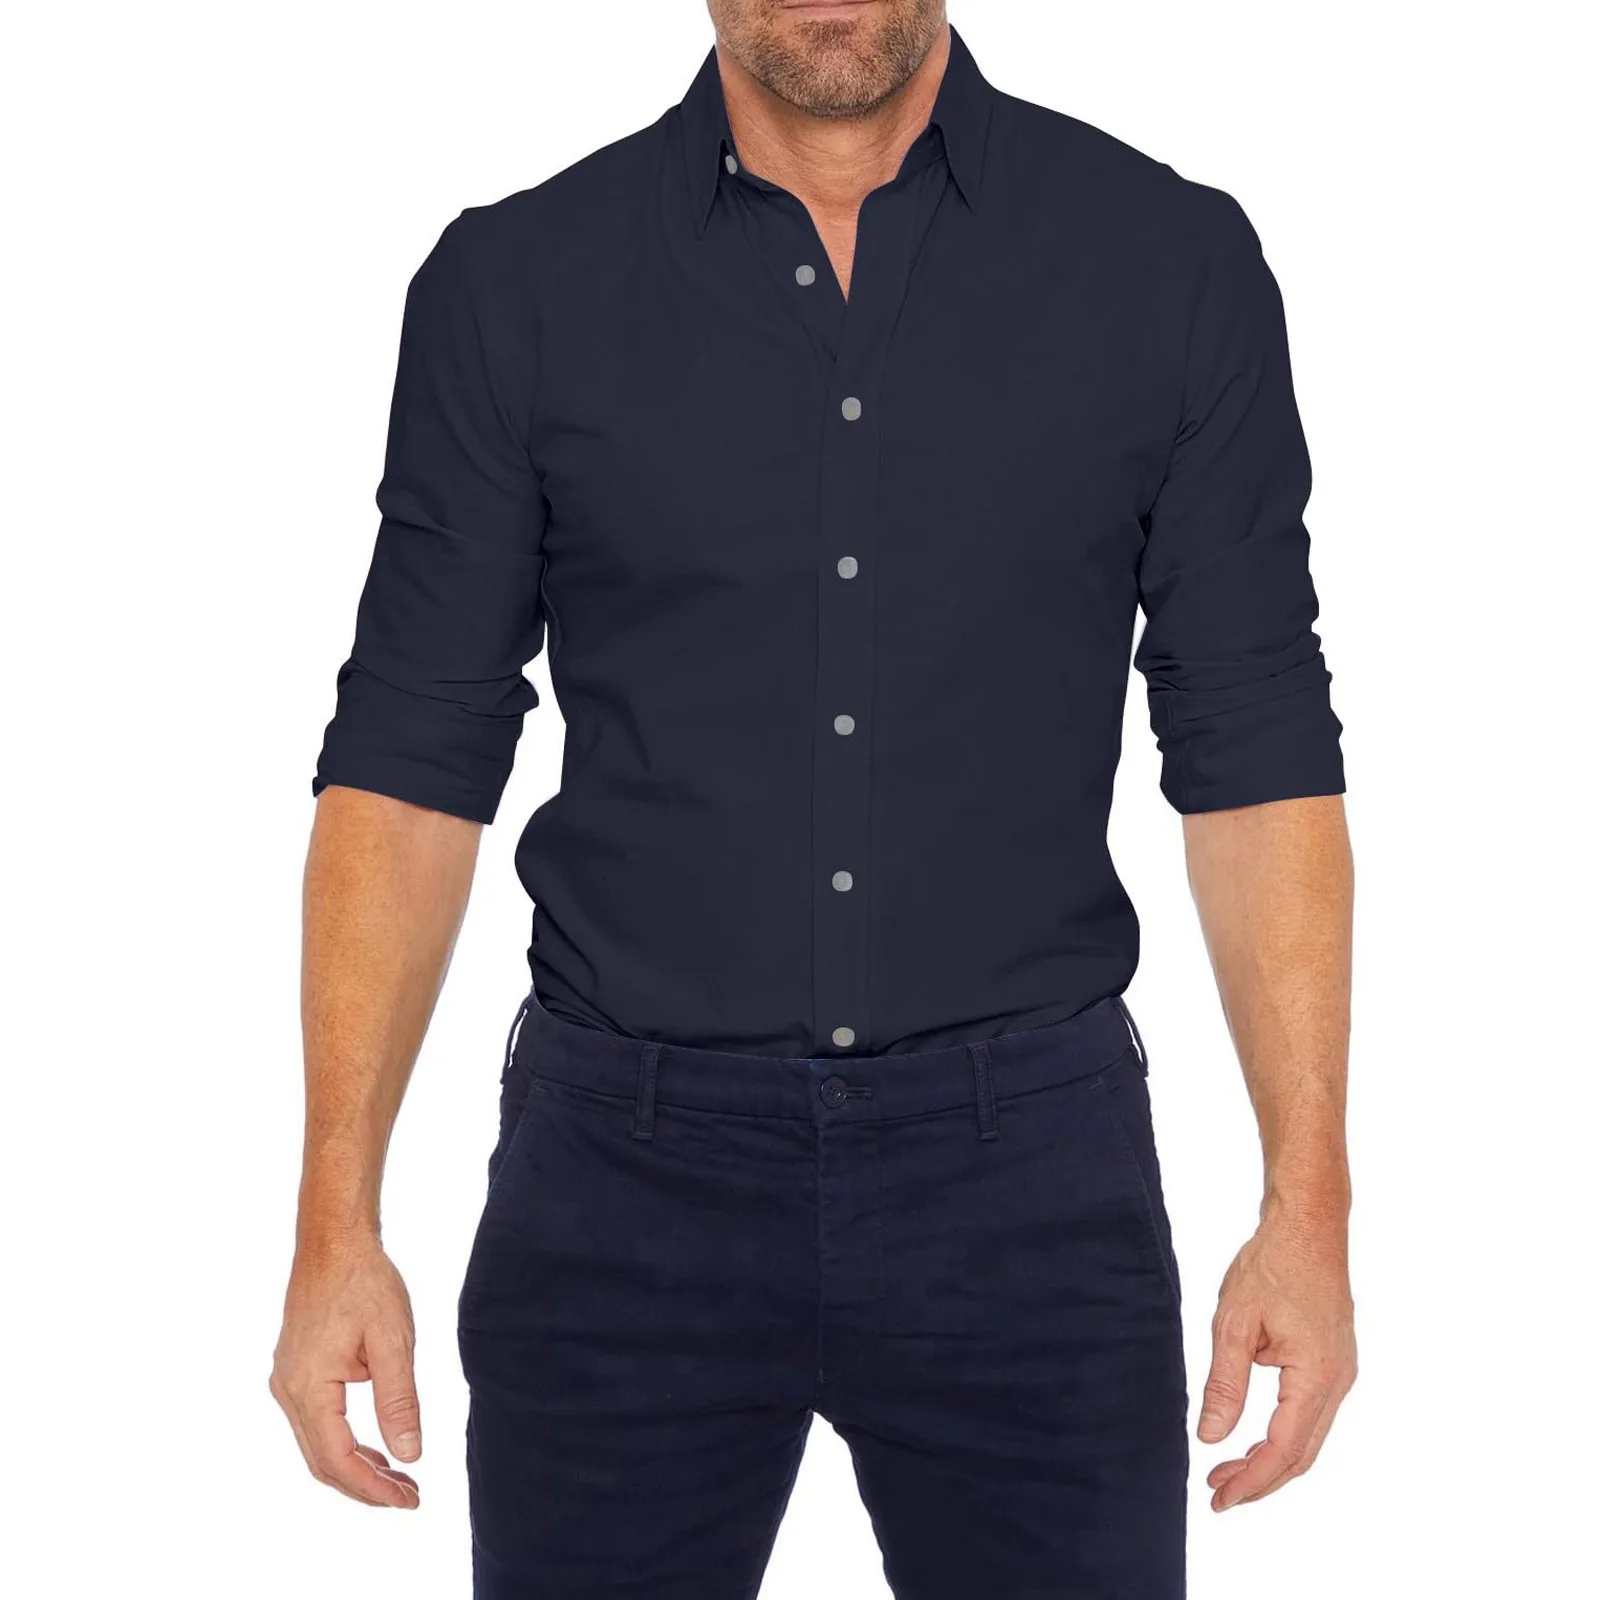 Мужские повседневные рубашки Мятые футболки Футболки с длинным рукавом Slim Fit Футболки Эластичные однотонные деловые рубашки на пуговицах для мужчин